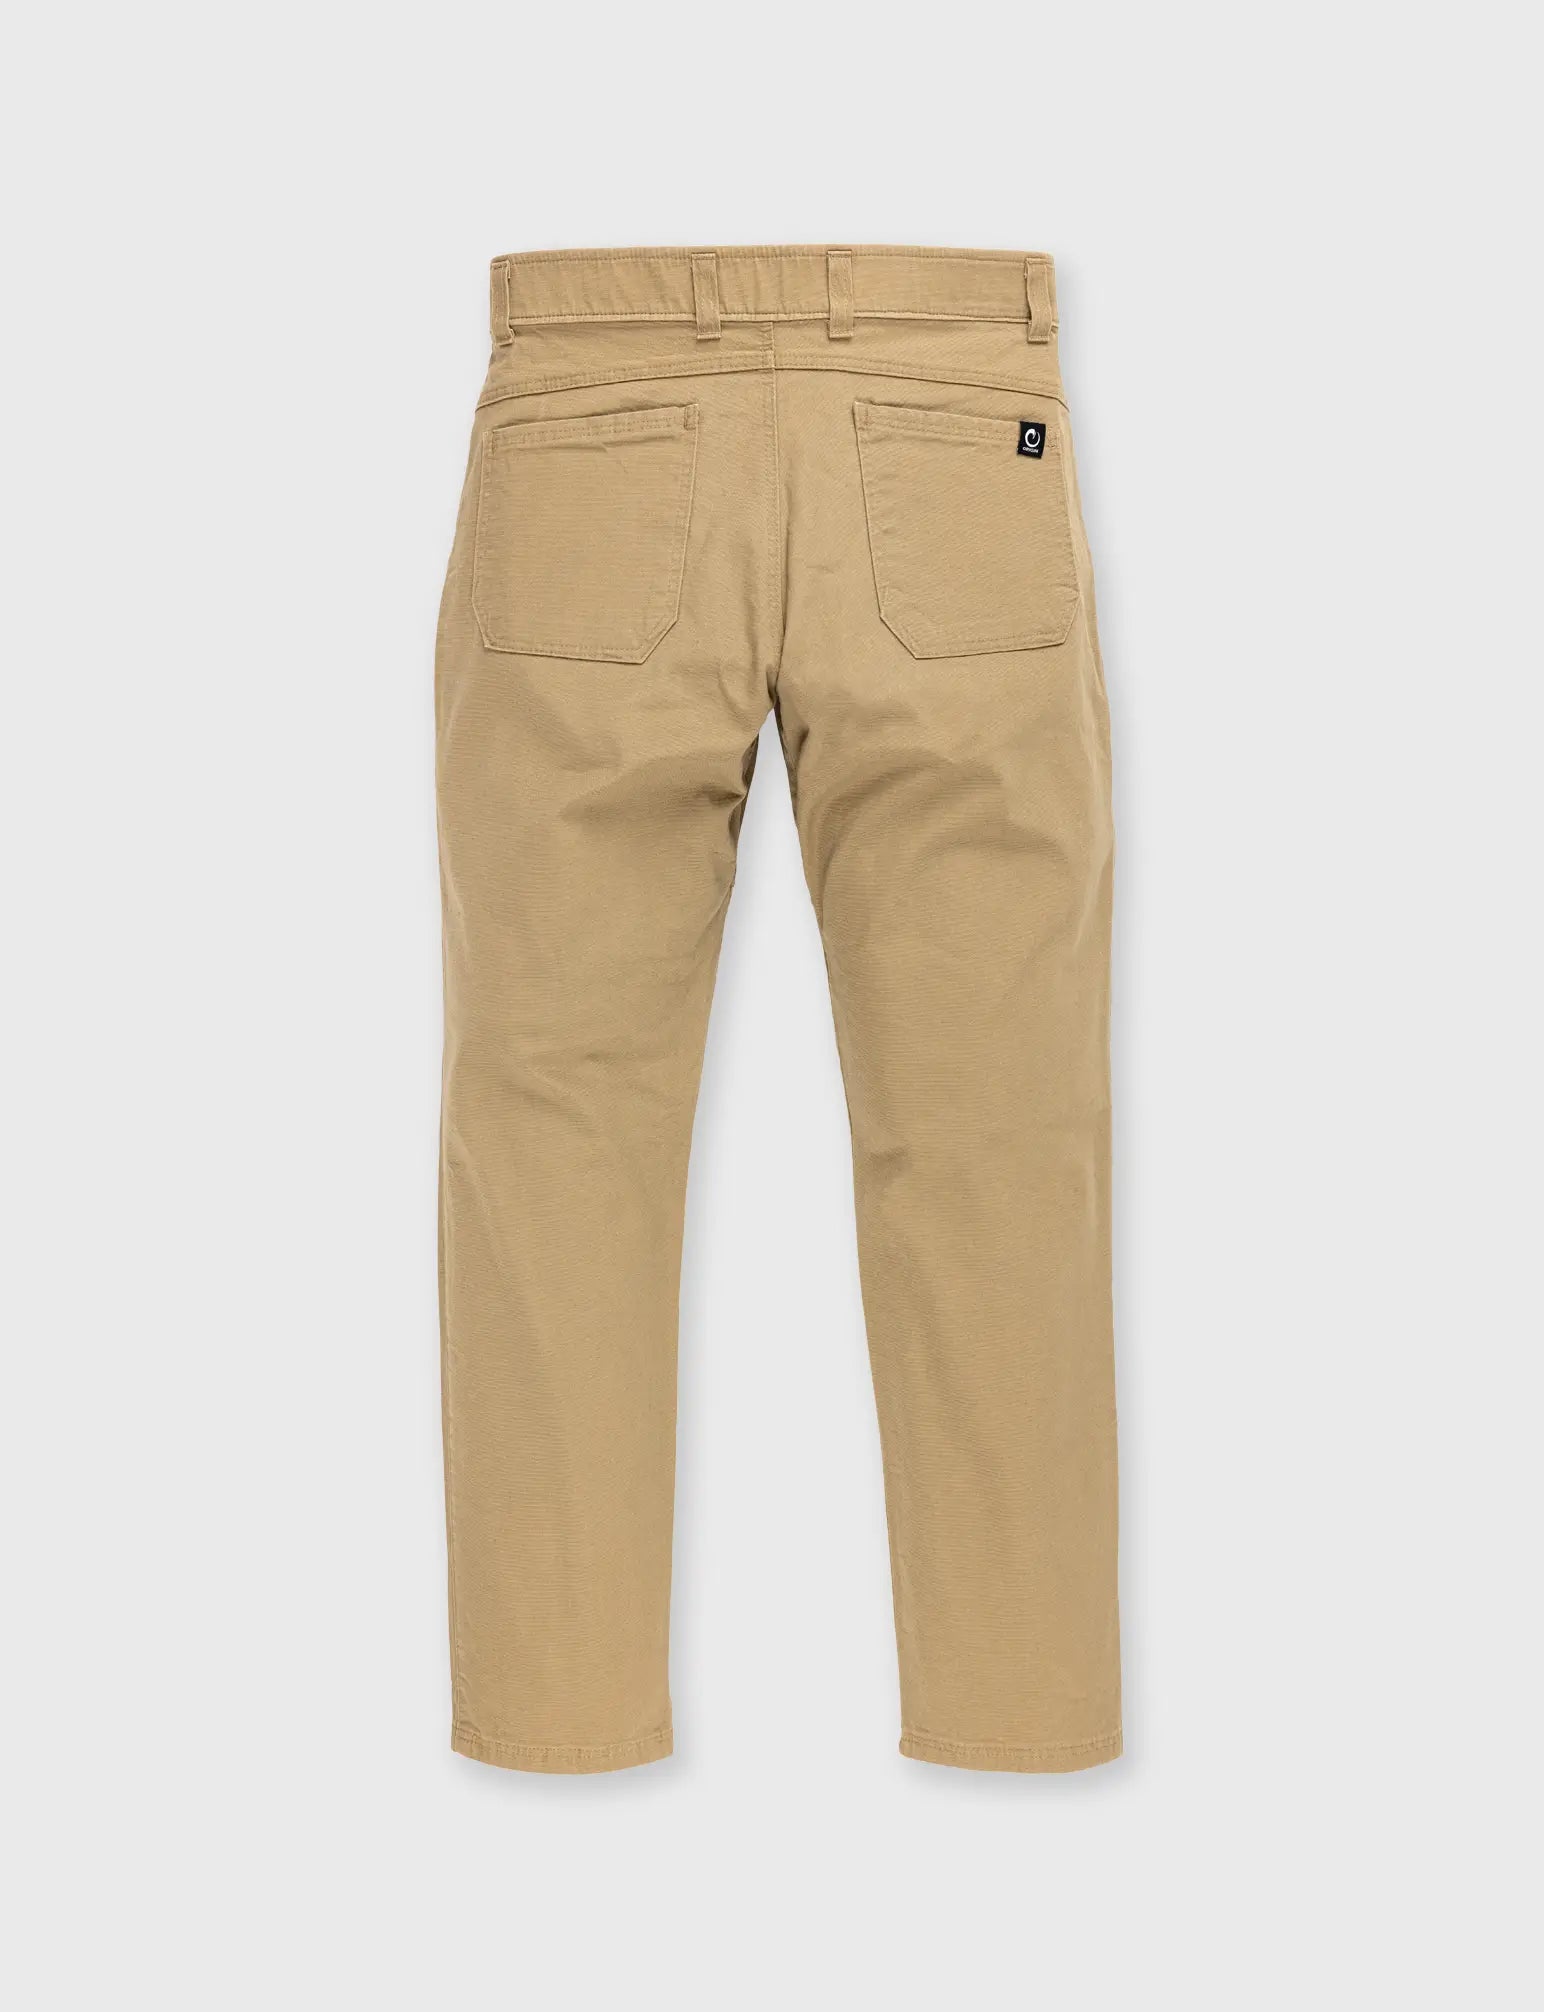 American-made Pants – ORIGIN